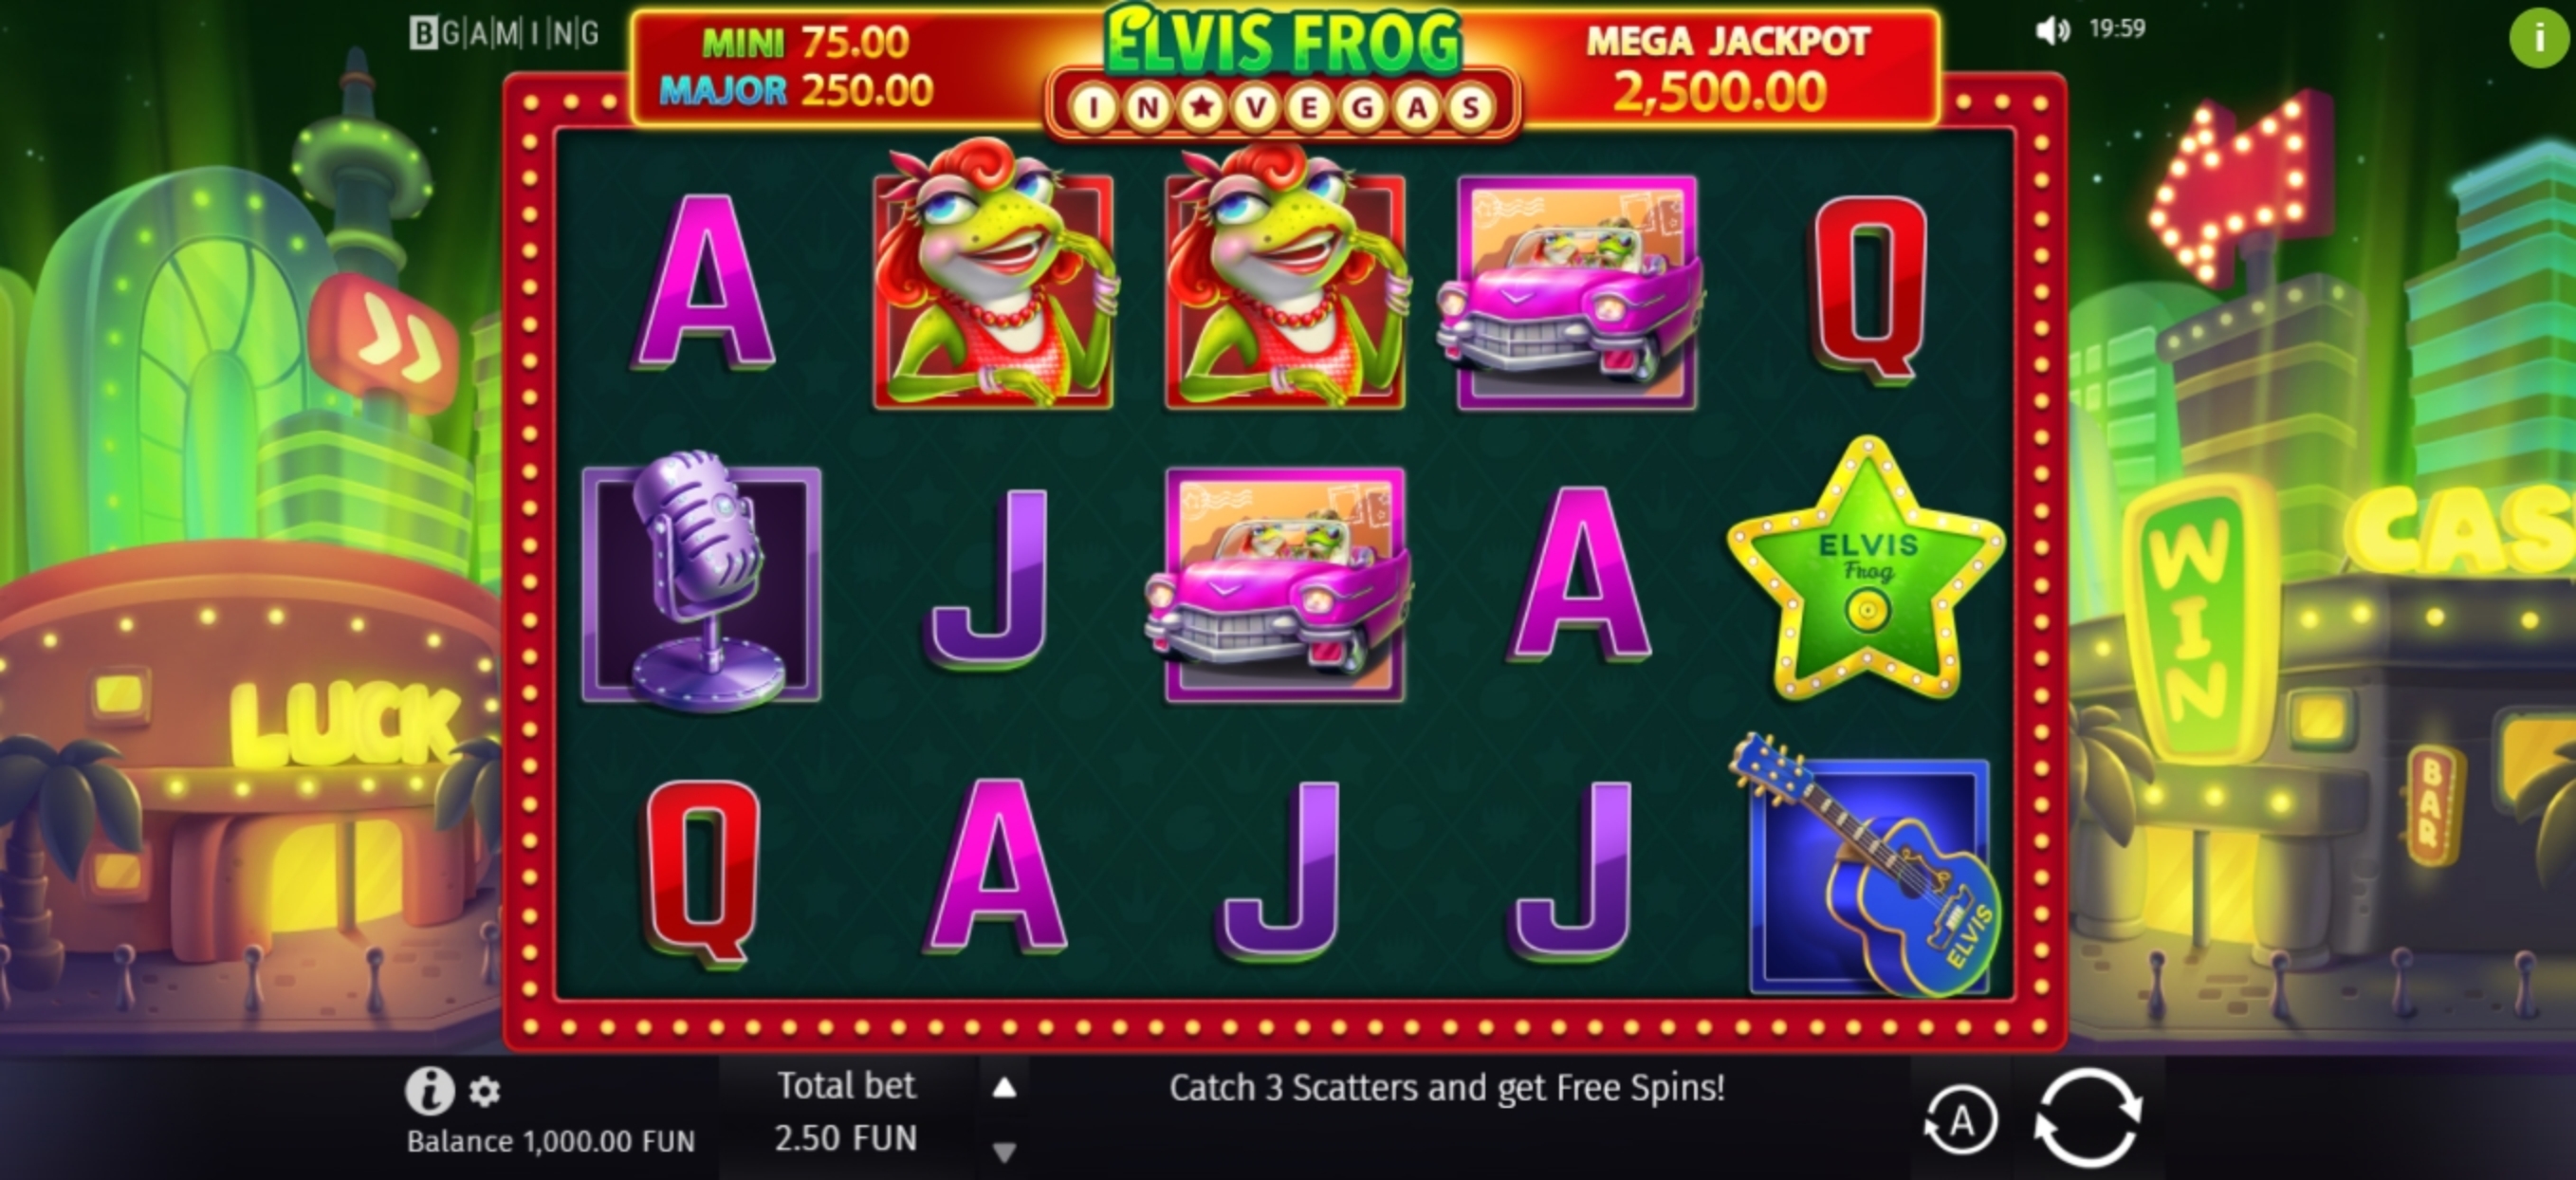 Reels in Elvis Frog in Vegas Slot Game by BGAMING